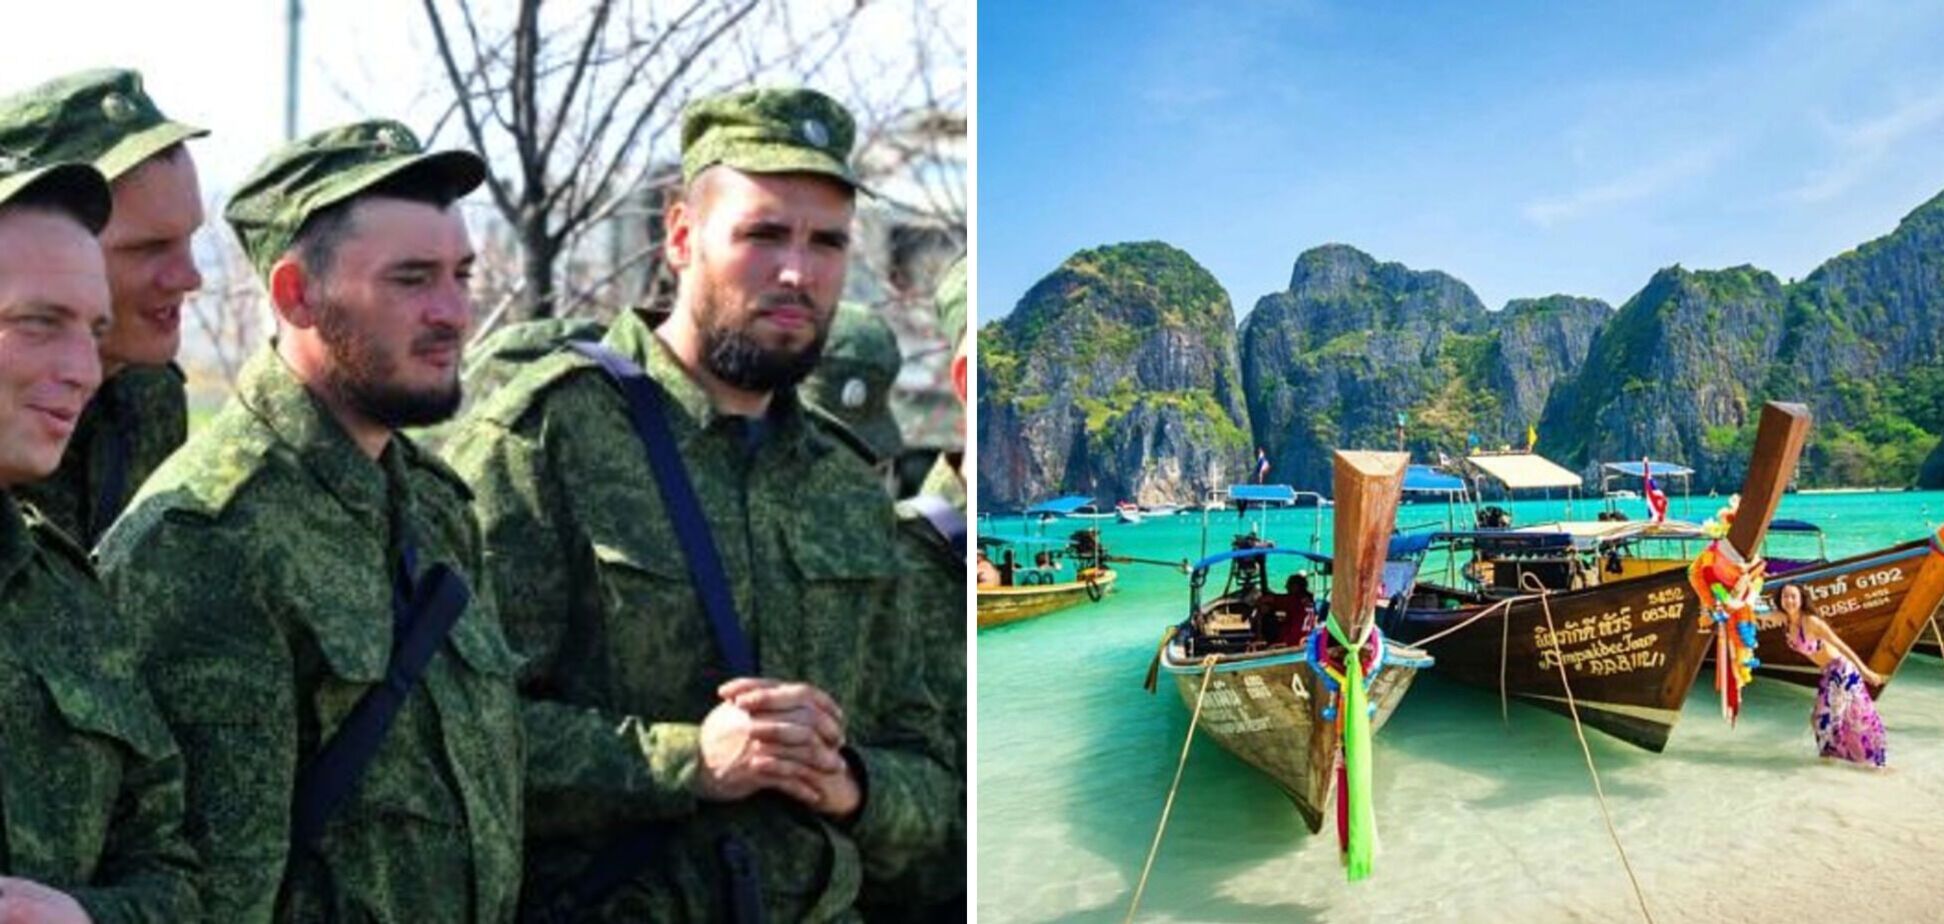 'Допоможіть, я втікаю від війни': двоє росіян у Таїланді 'відзначилися' жебрацтвом і потрапили під арешт. Фото